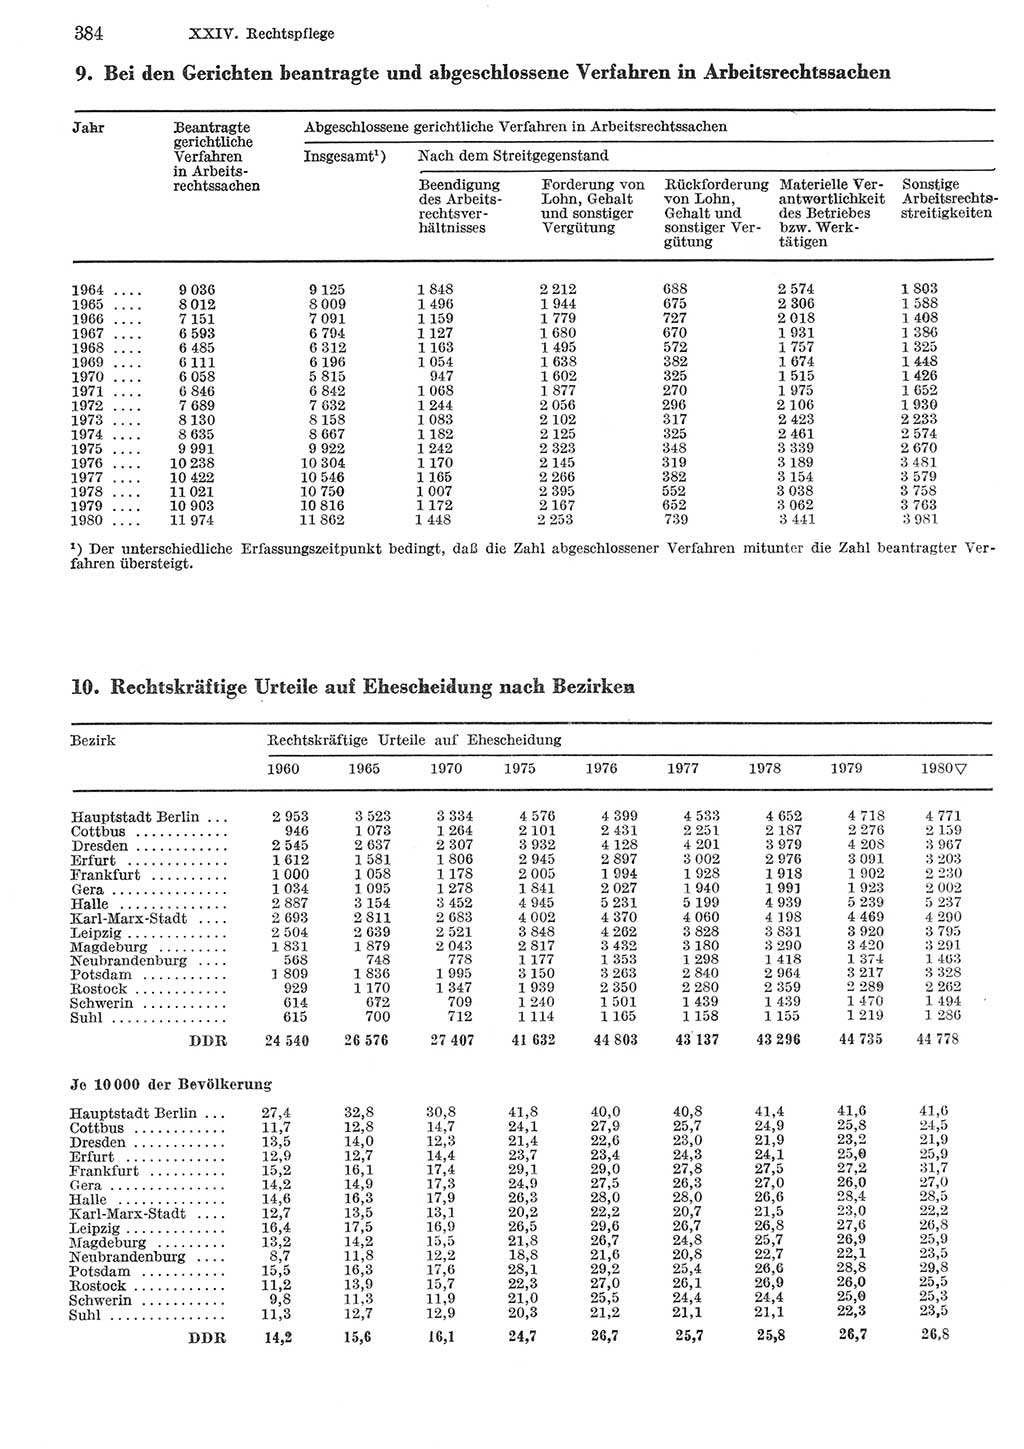 Statistisches Jahrbuch der Deutschen Demokratischen Republik (DDR) 1981, Seite 384 (Stat. Jb. DDR 1981, S. 384)